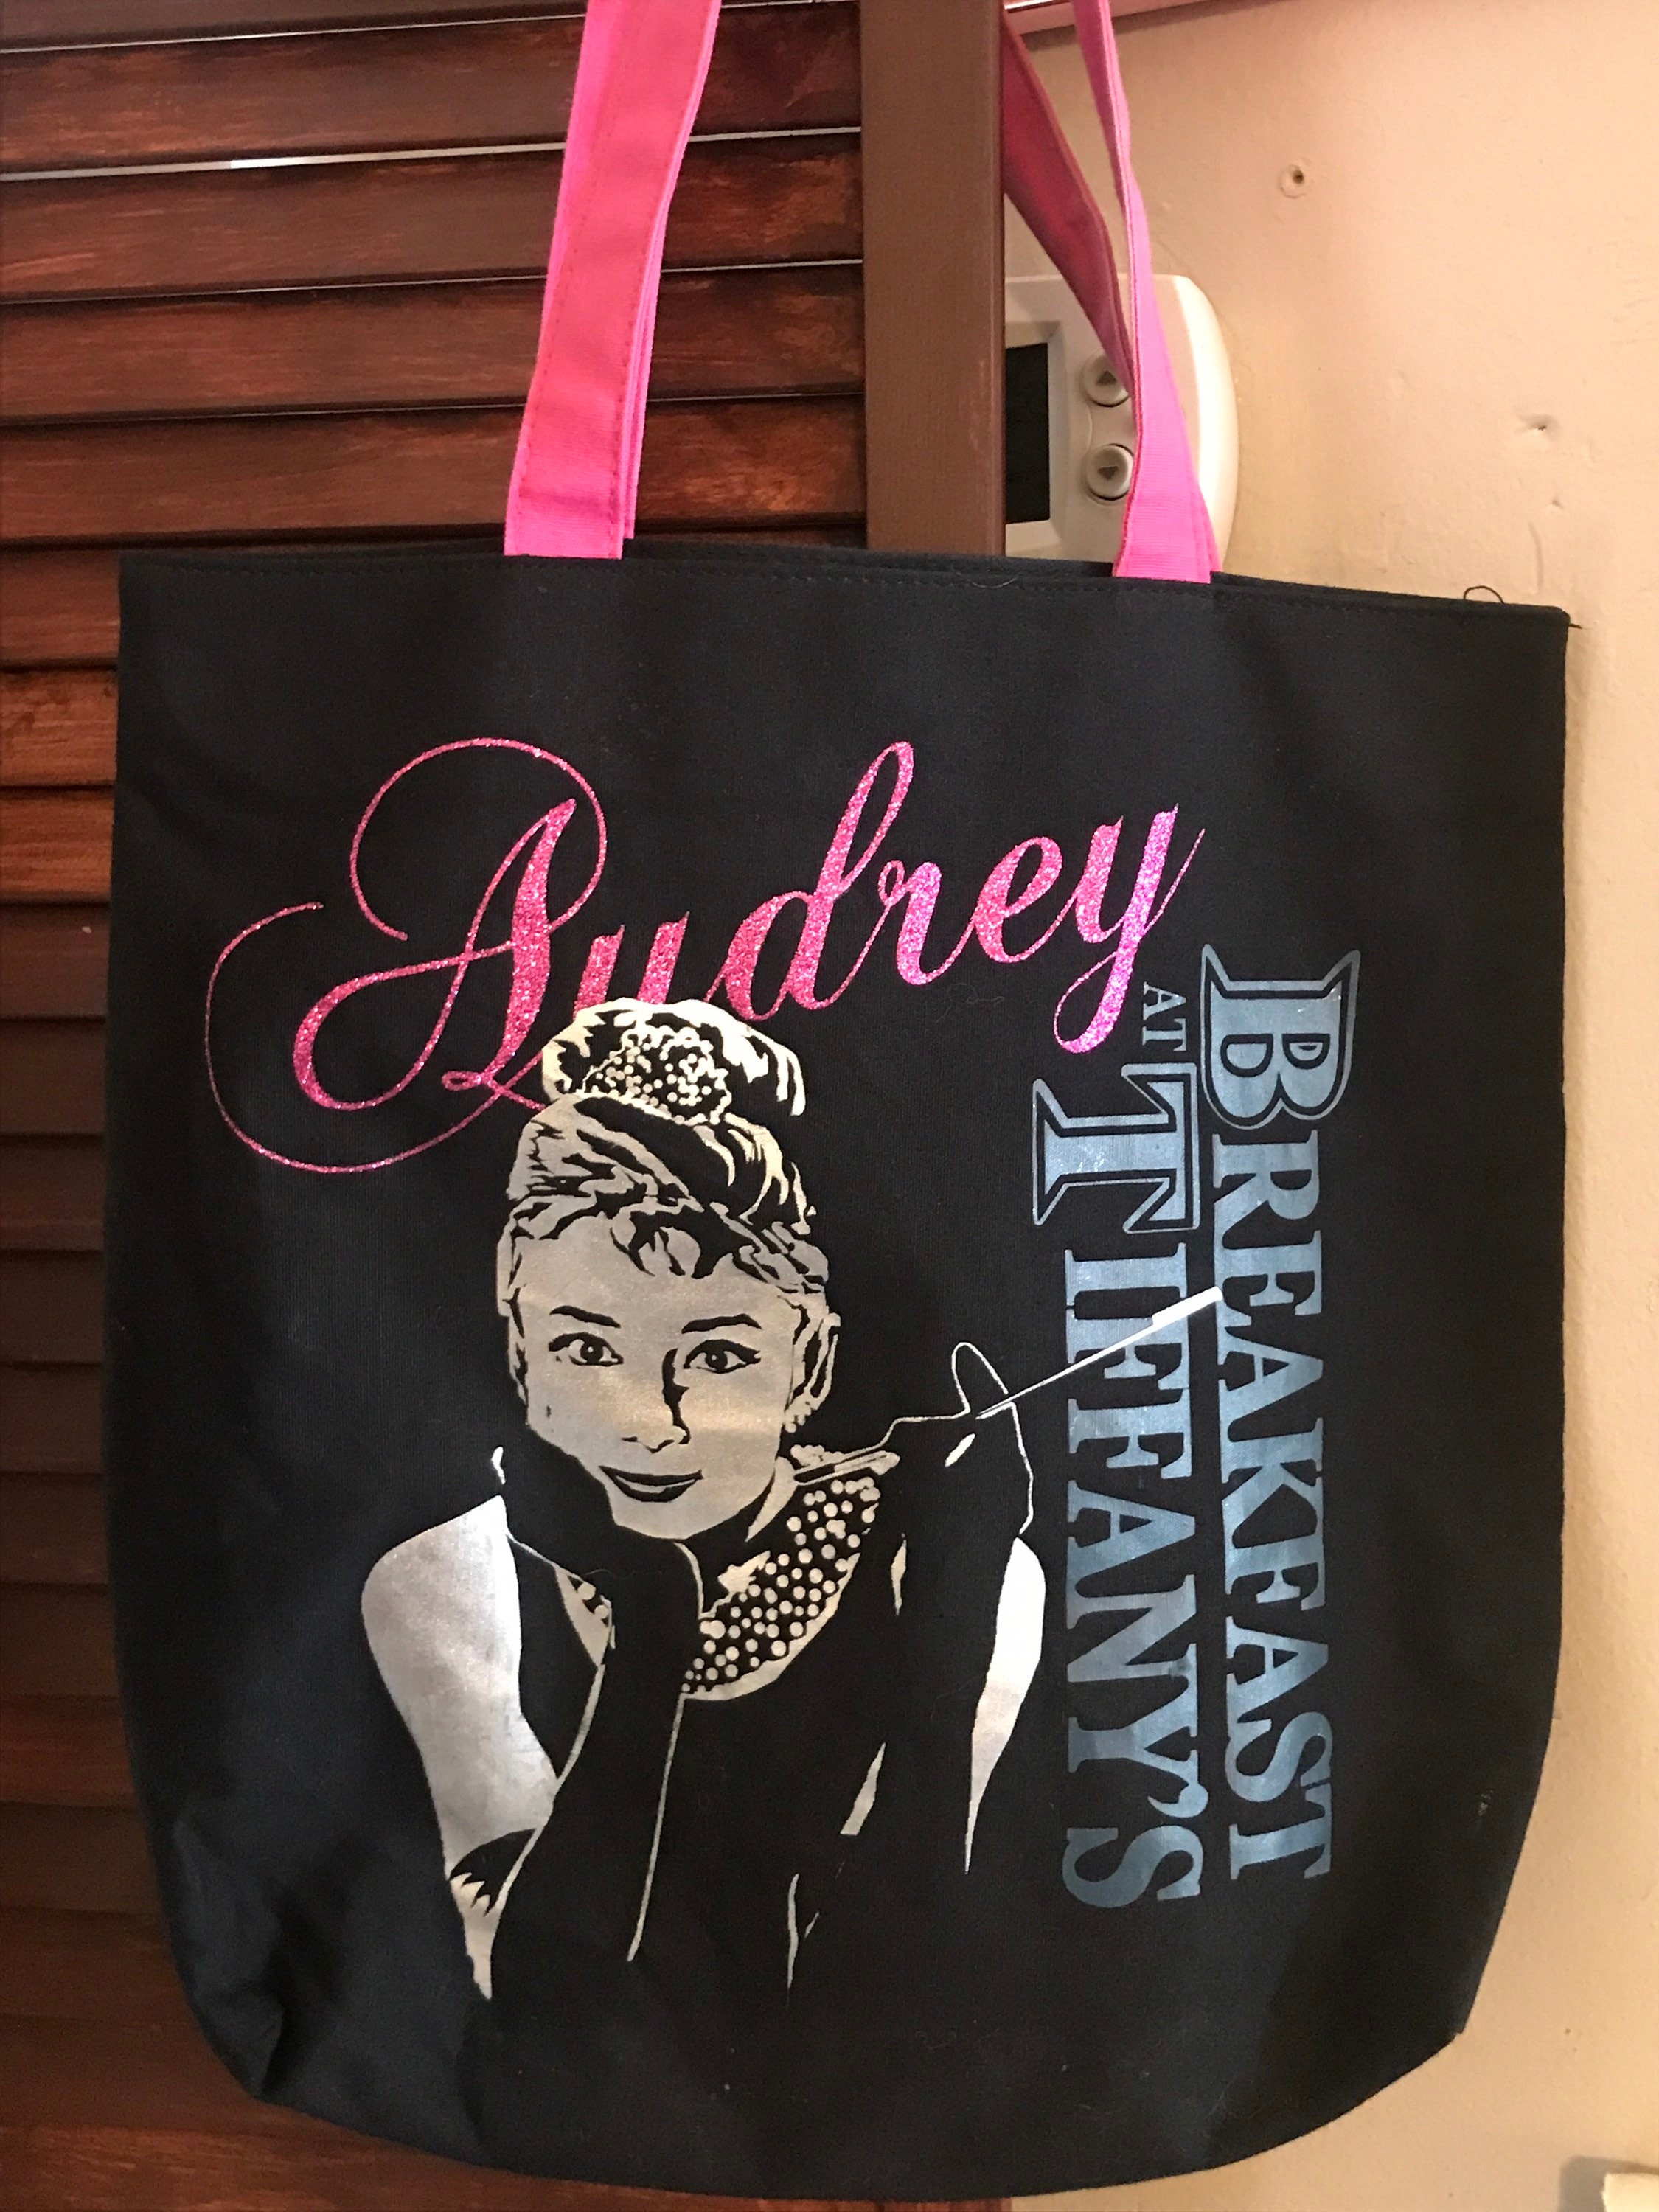 Audrey Hepburn Tote Bag